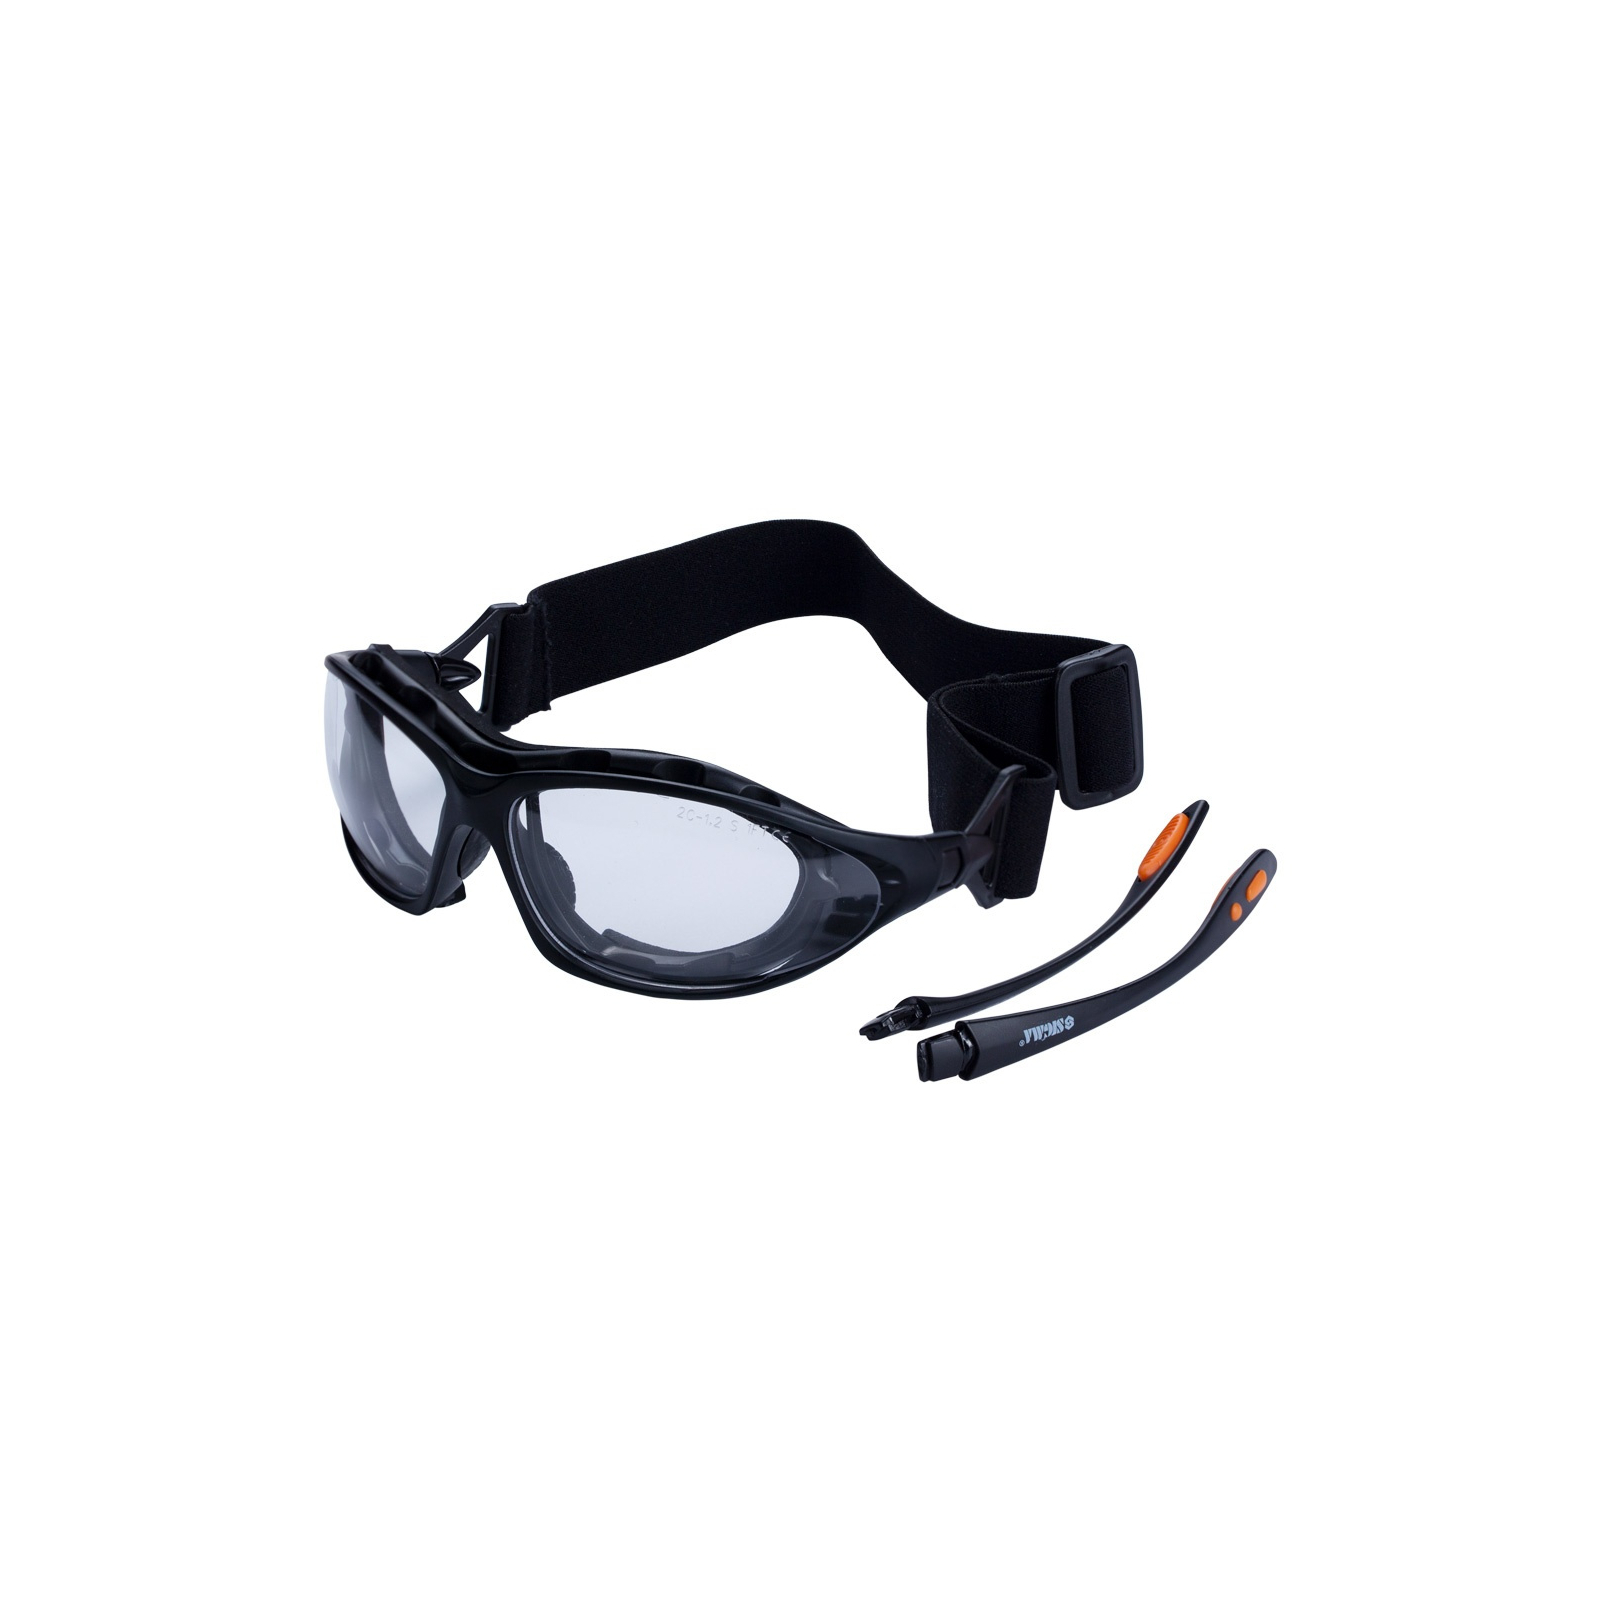 Защитные очки Sigma Super Zoom anti-scratch, anti-fog (9410911) изображение 3